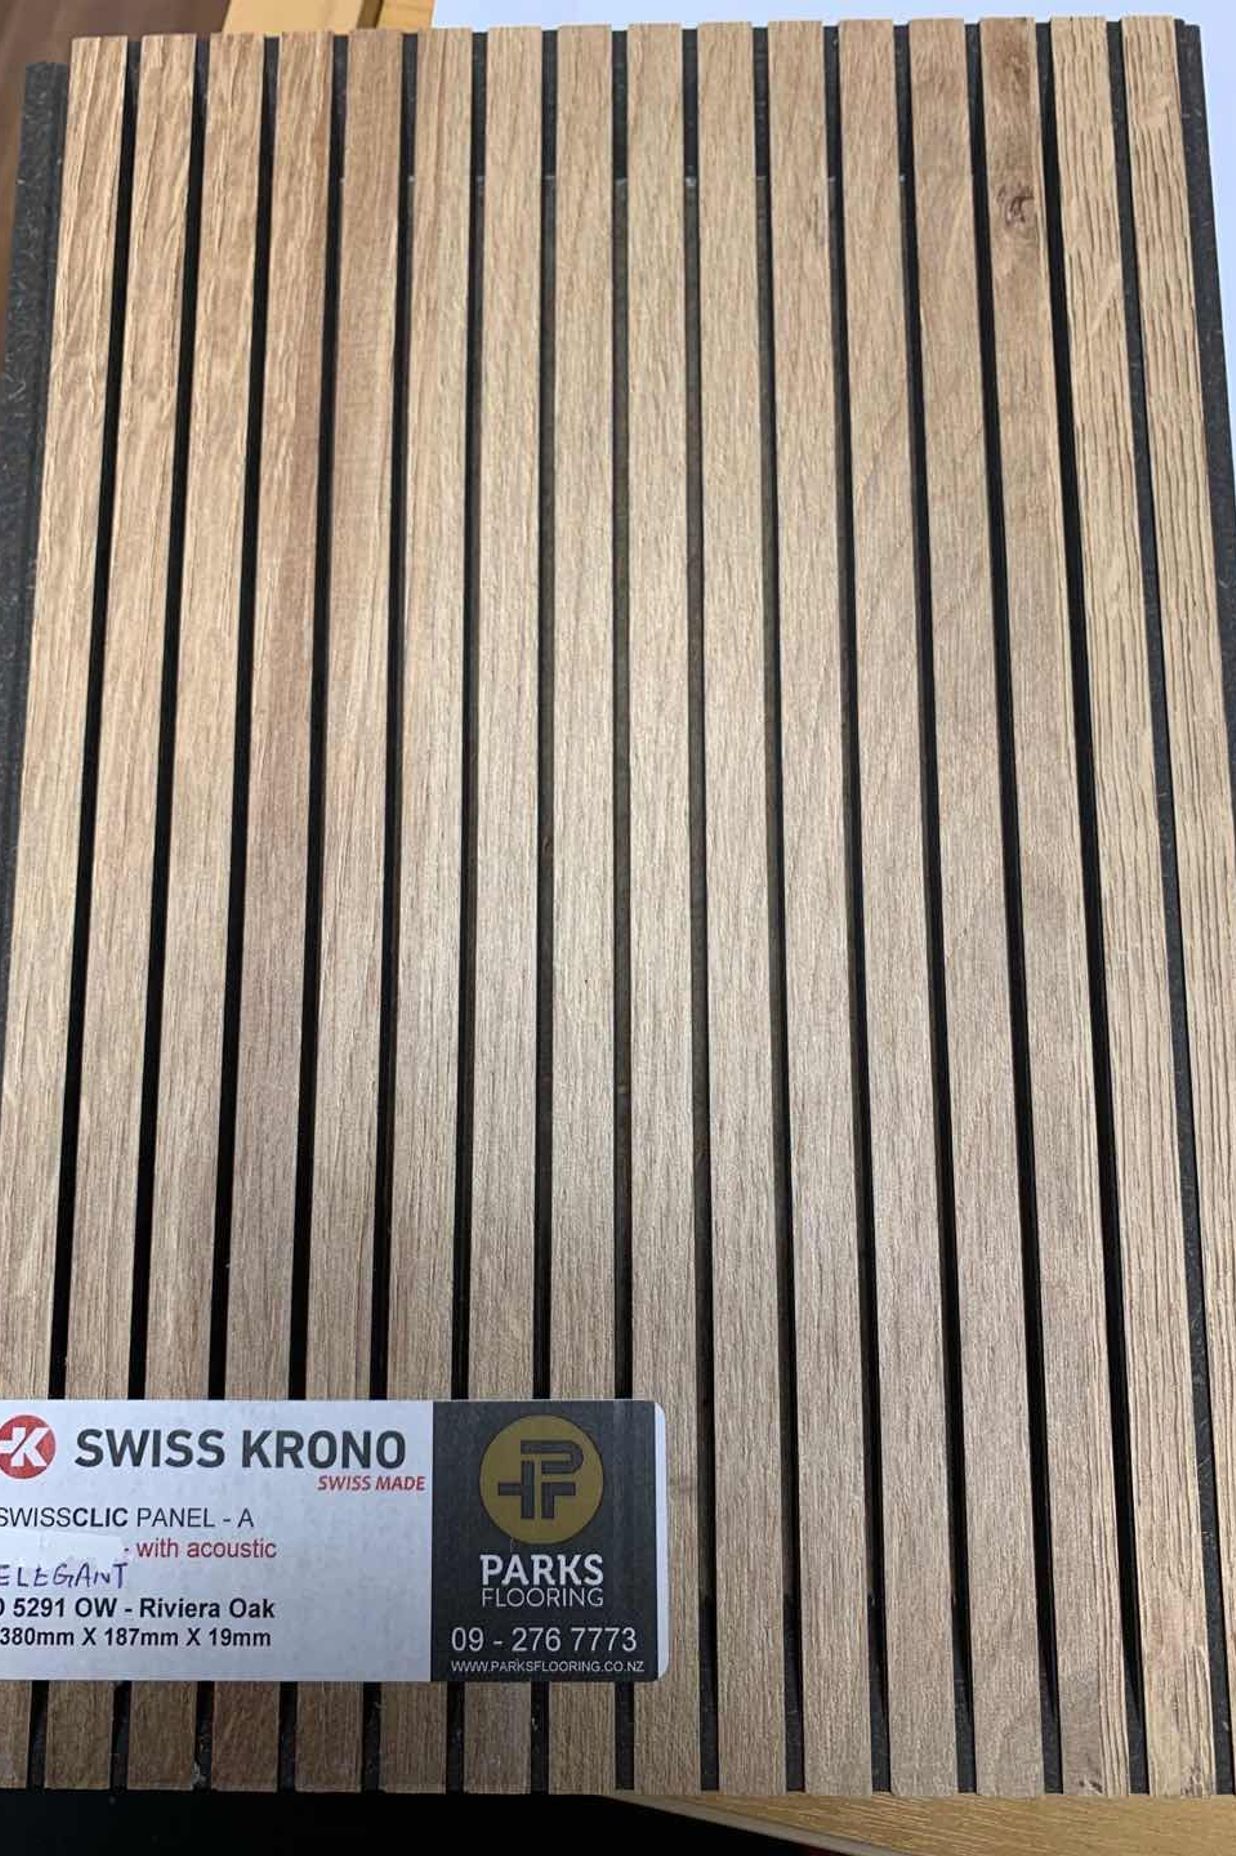 Swiss Krono - SwissClic Acoustic Panel for New Zealand Wine